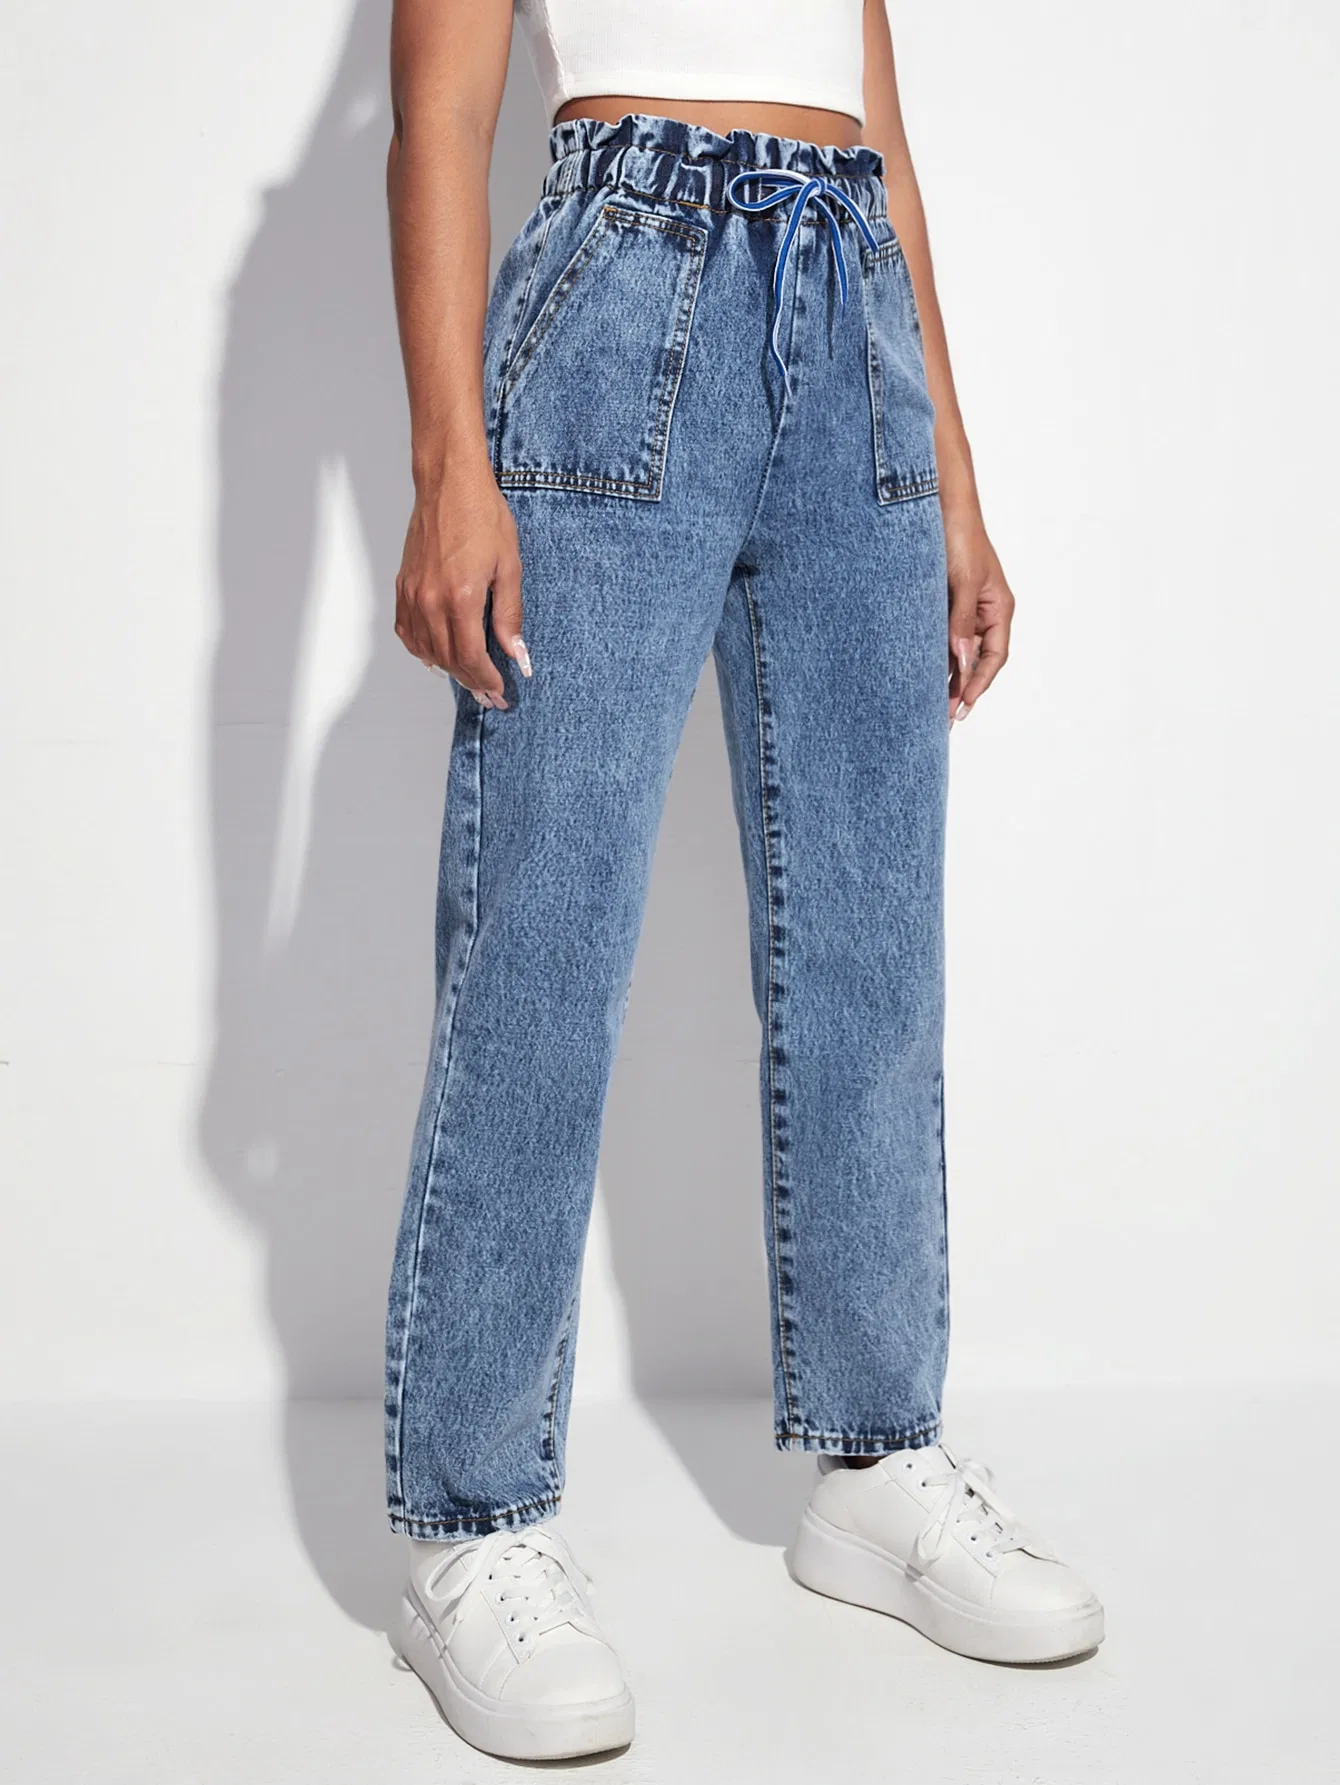 New Fashion Lady Jeans Light Blue Color High Waisted Stretch Cinturilla de elastán de calidad con jeans con bolsillo delantero con estera y parche